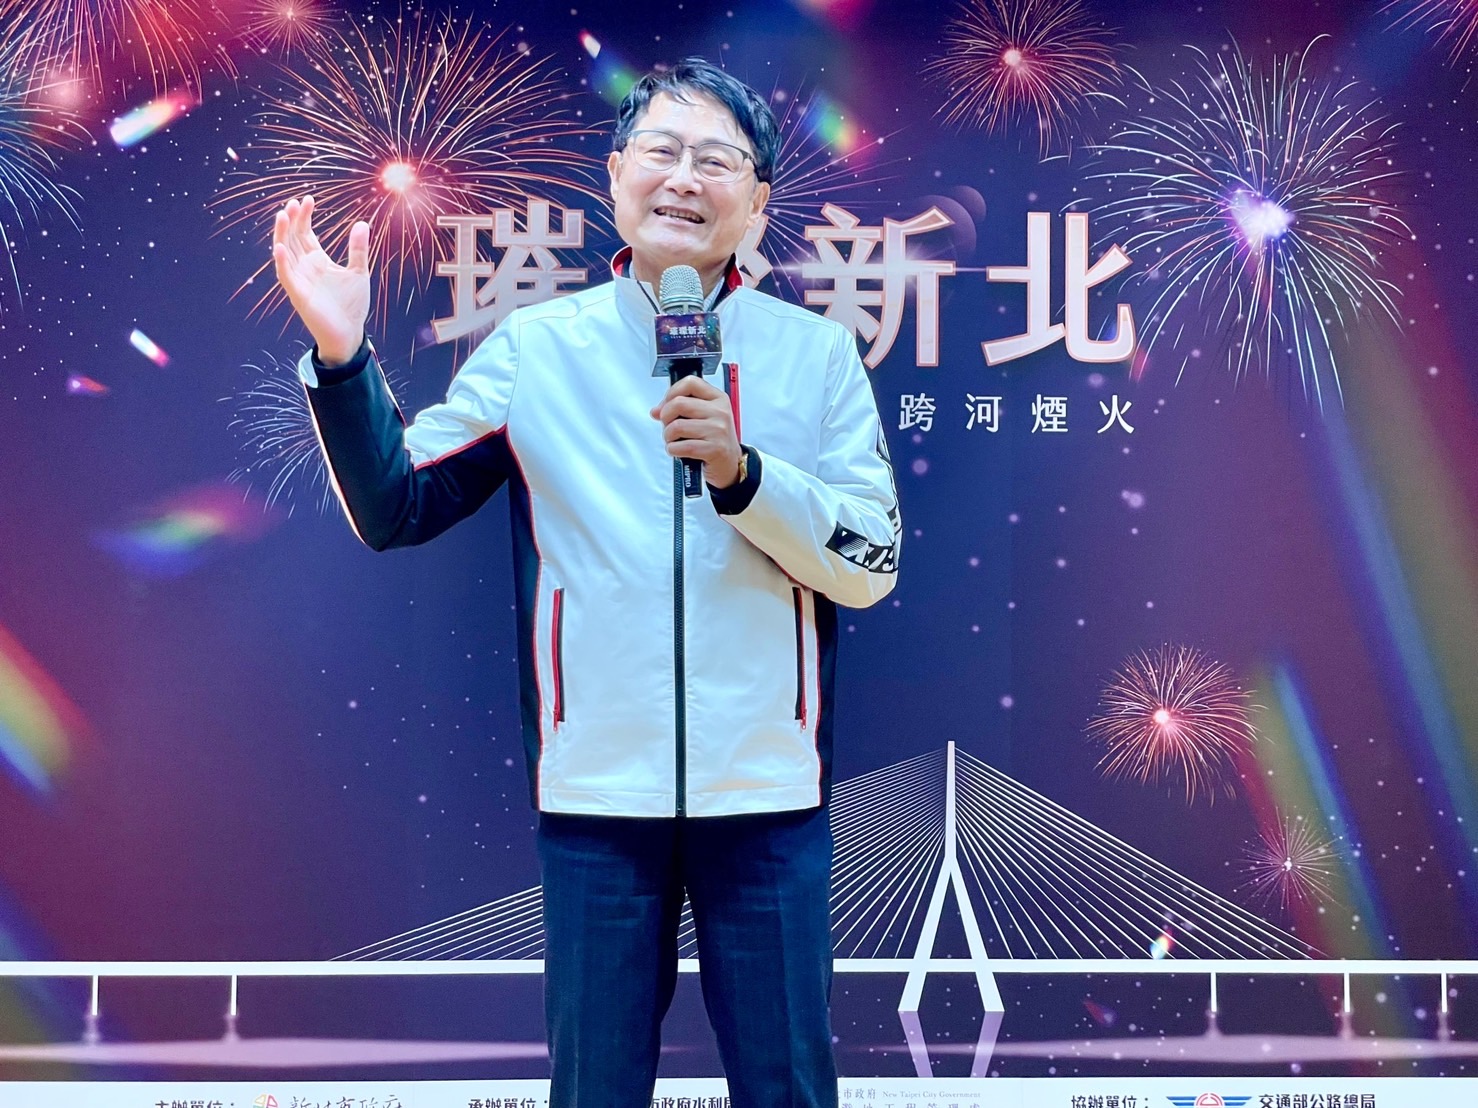 新北市副市長陳純敬表示新北跨河煙火選在淡江大橋施放，並以友善、親子為目標